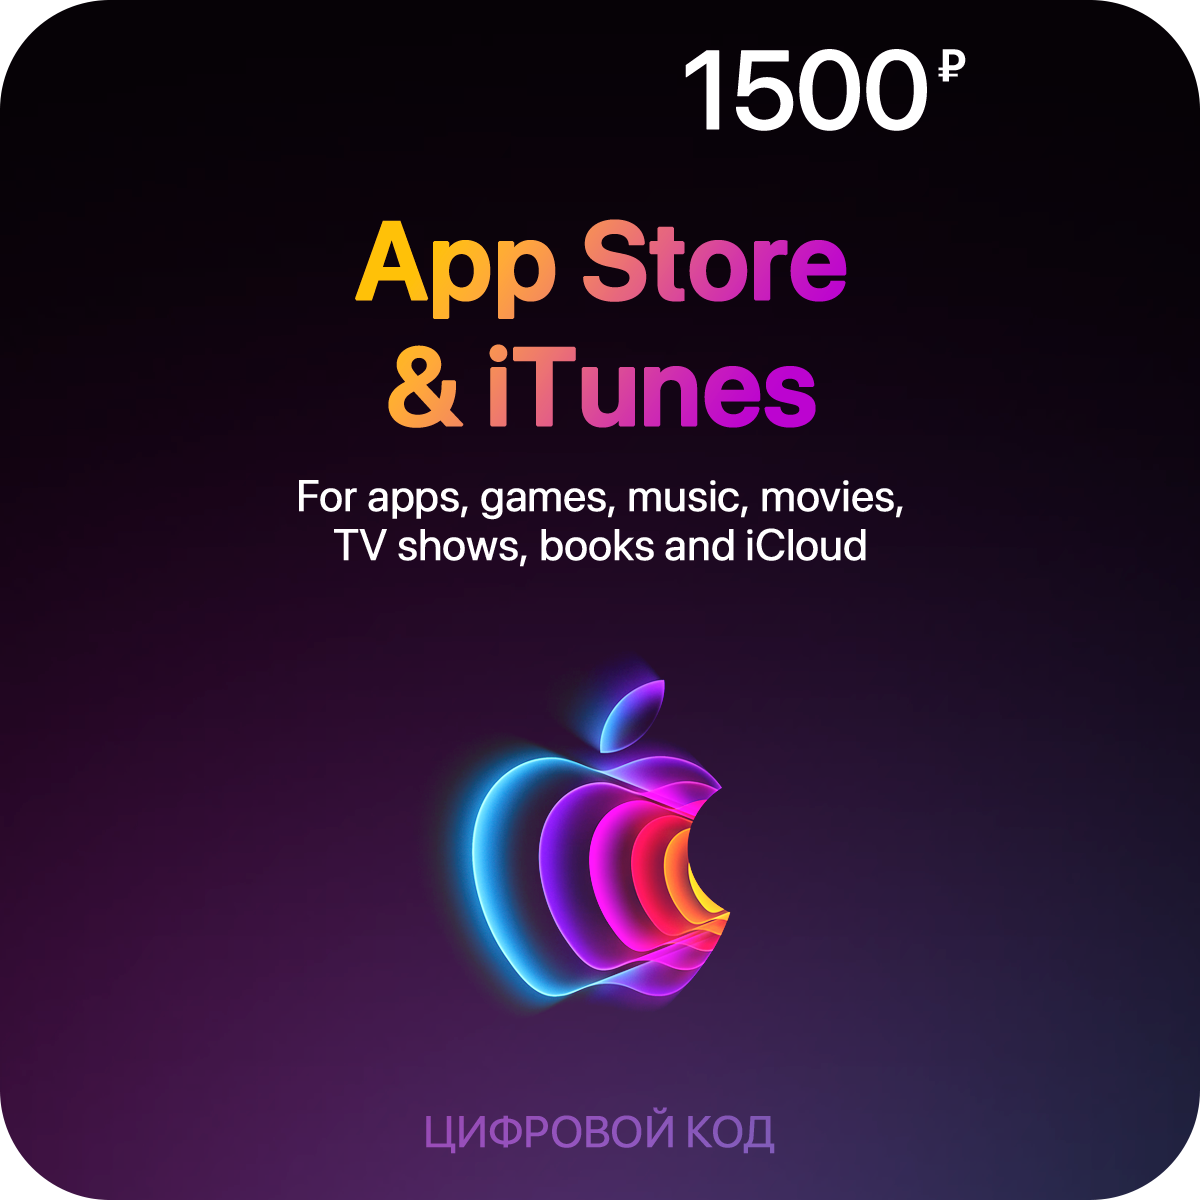 Пополнение счета App Store & iTunes (1500 рублей)